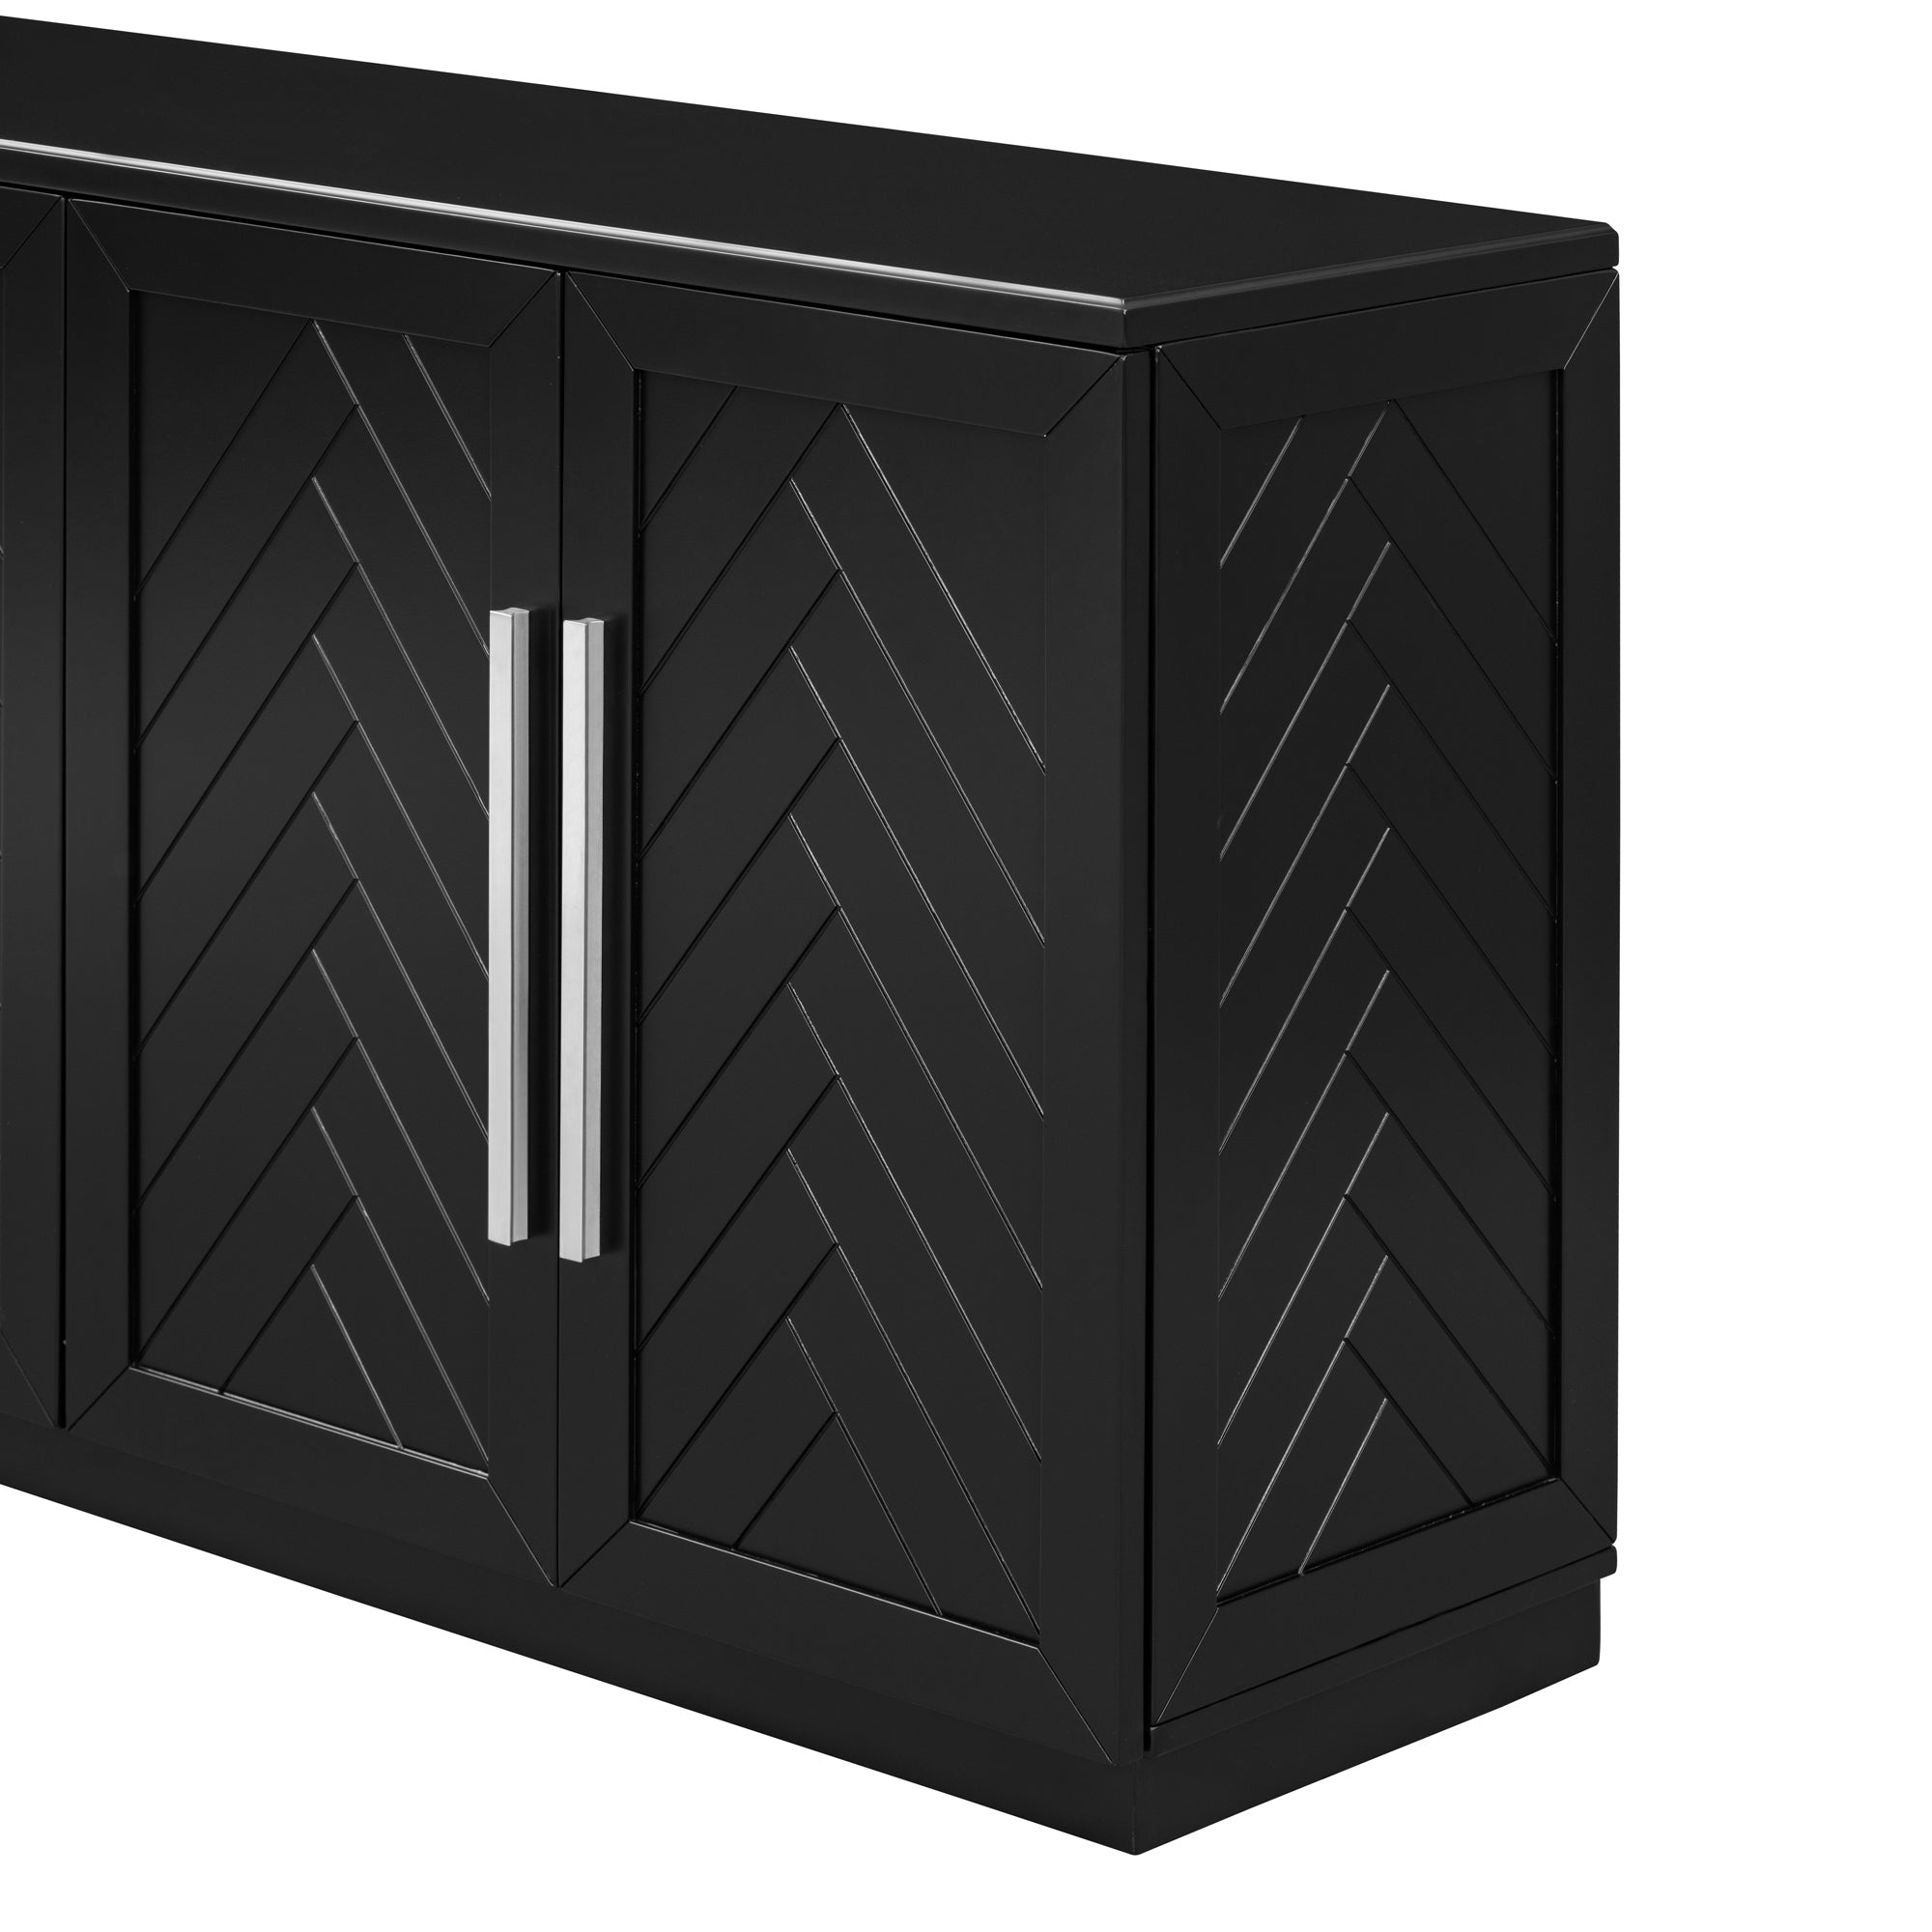 Sideboard with 4 Doors Large Storage Space black-solid wood+mdf